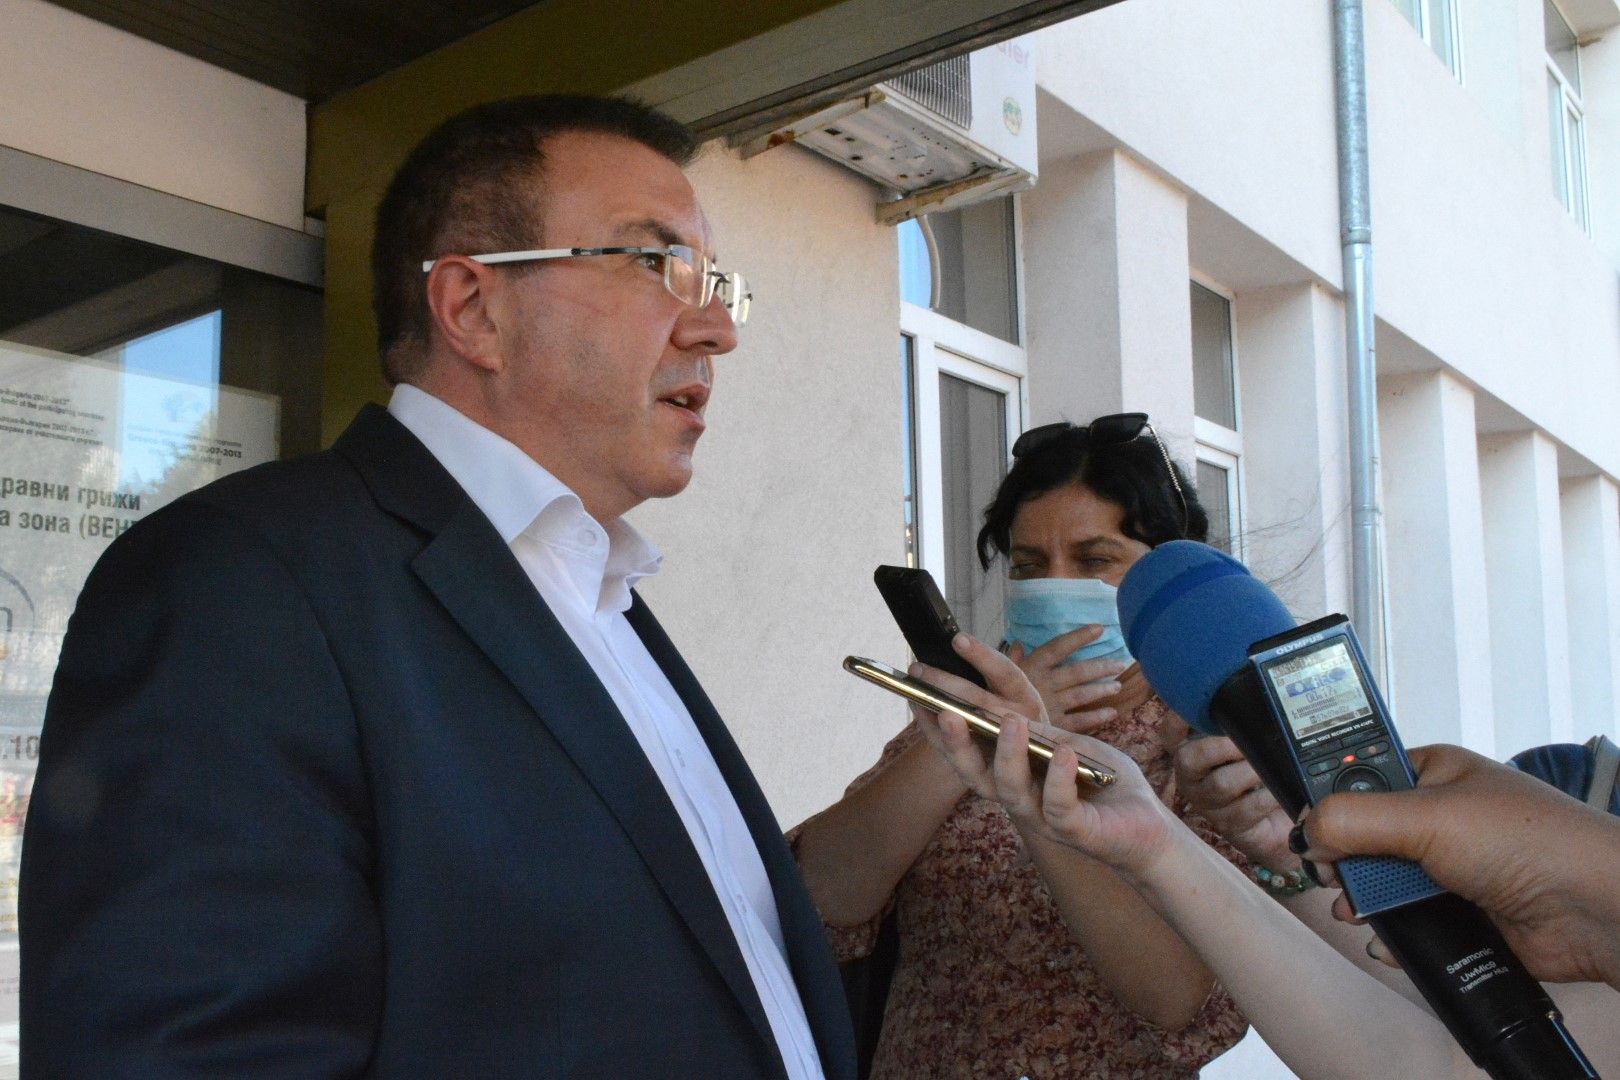 Здравният министър проф. Костадин Ангелов посети Благоевград, където се запозна с работата на областния оперативен щаб за борба с коронавируса и с капацитета на лечебните заведения в областта